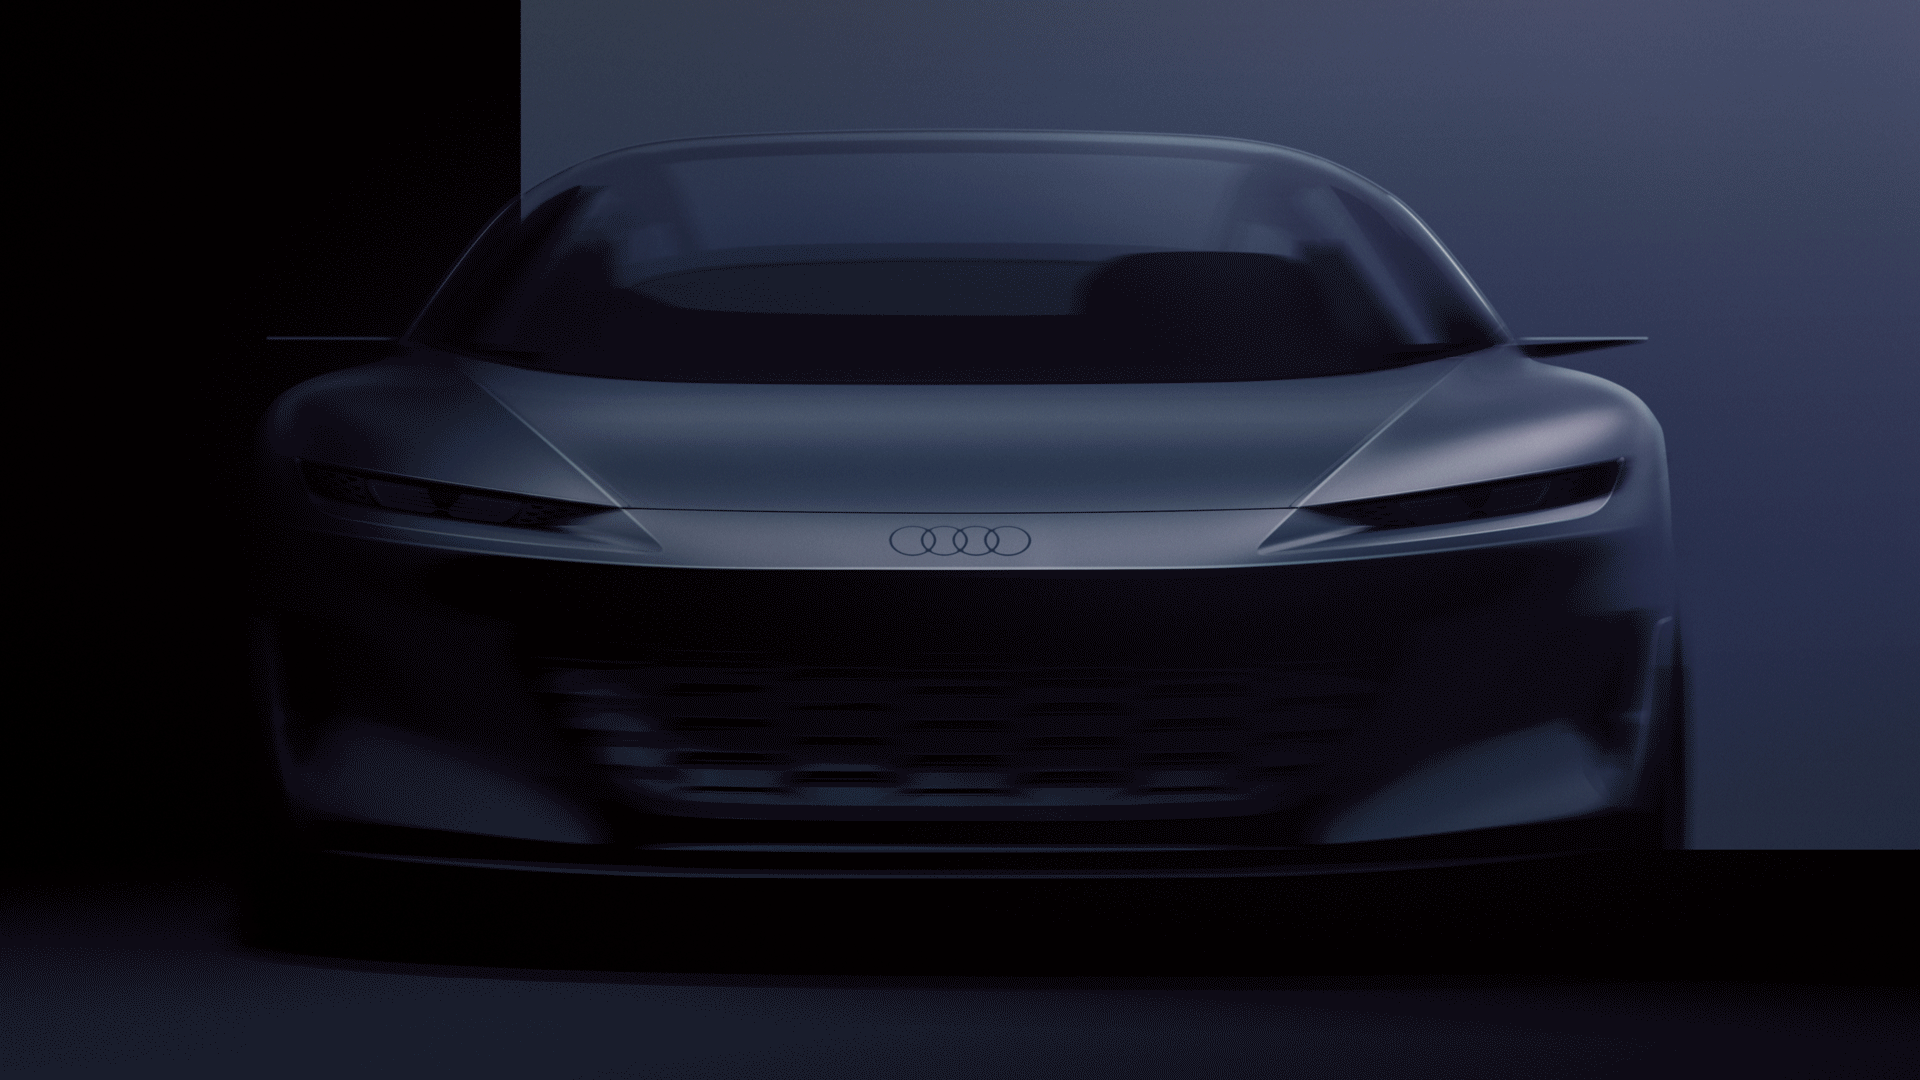 De Audi grandsphere concept opent zijn ogen